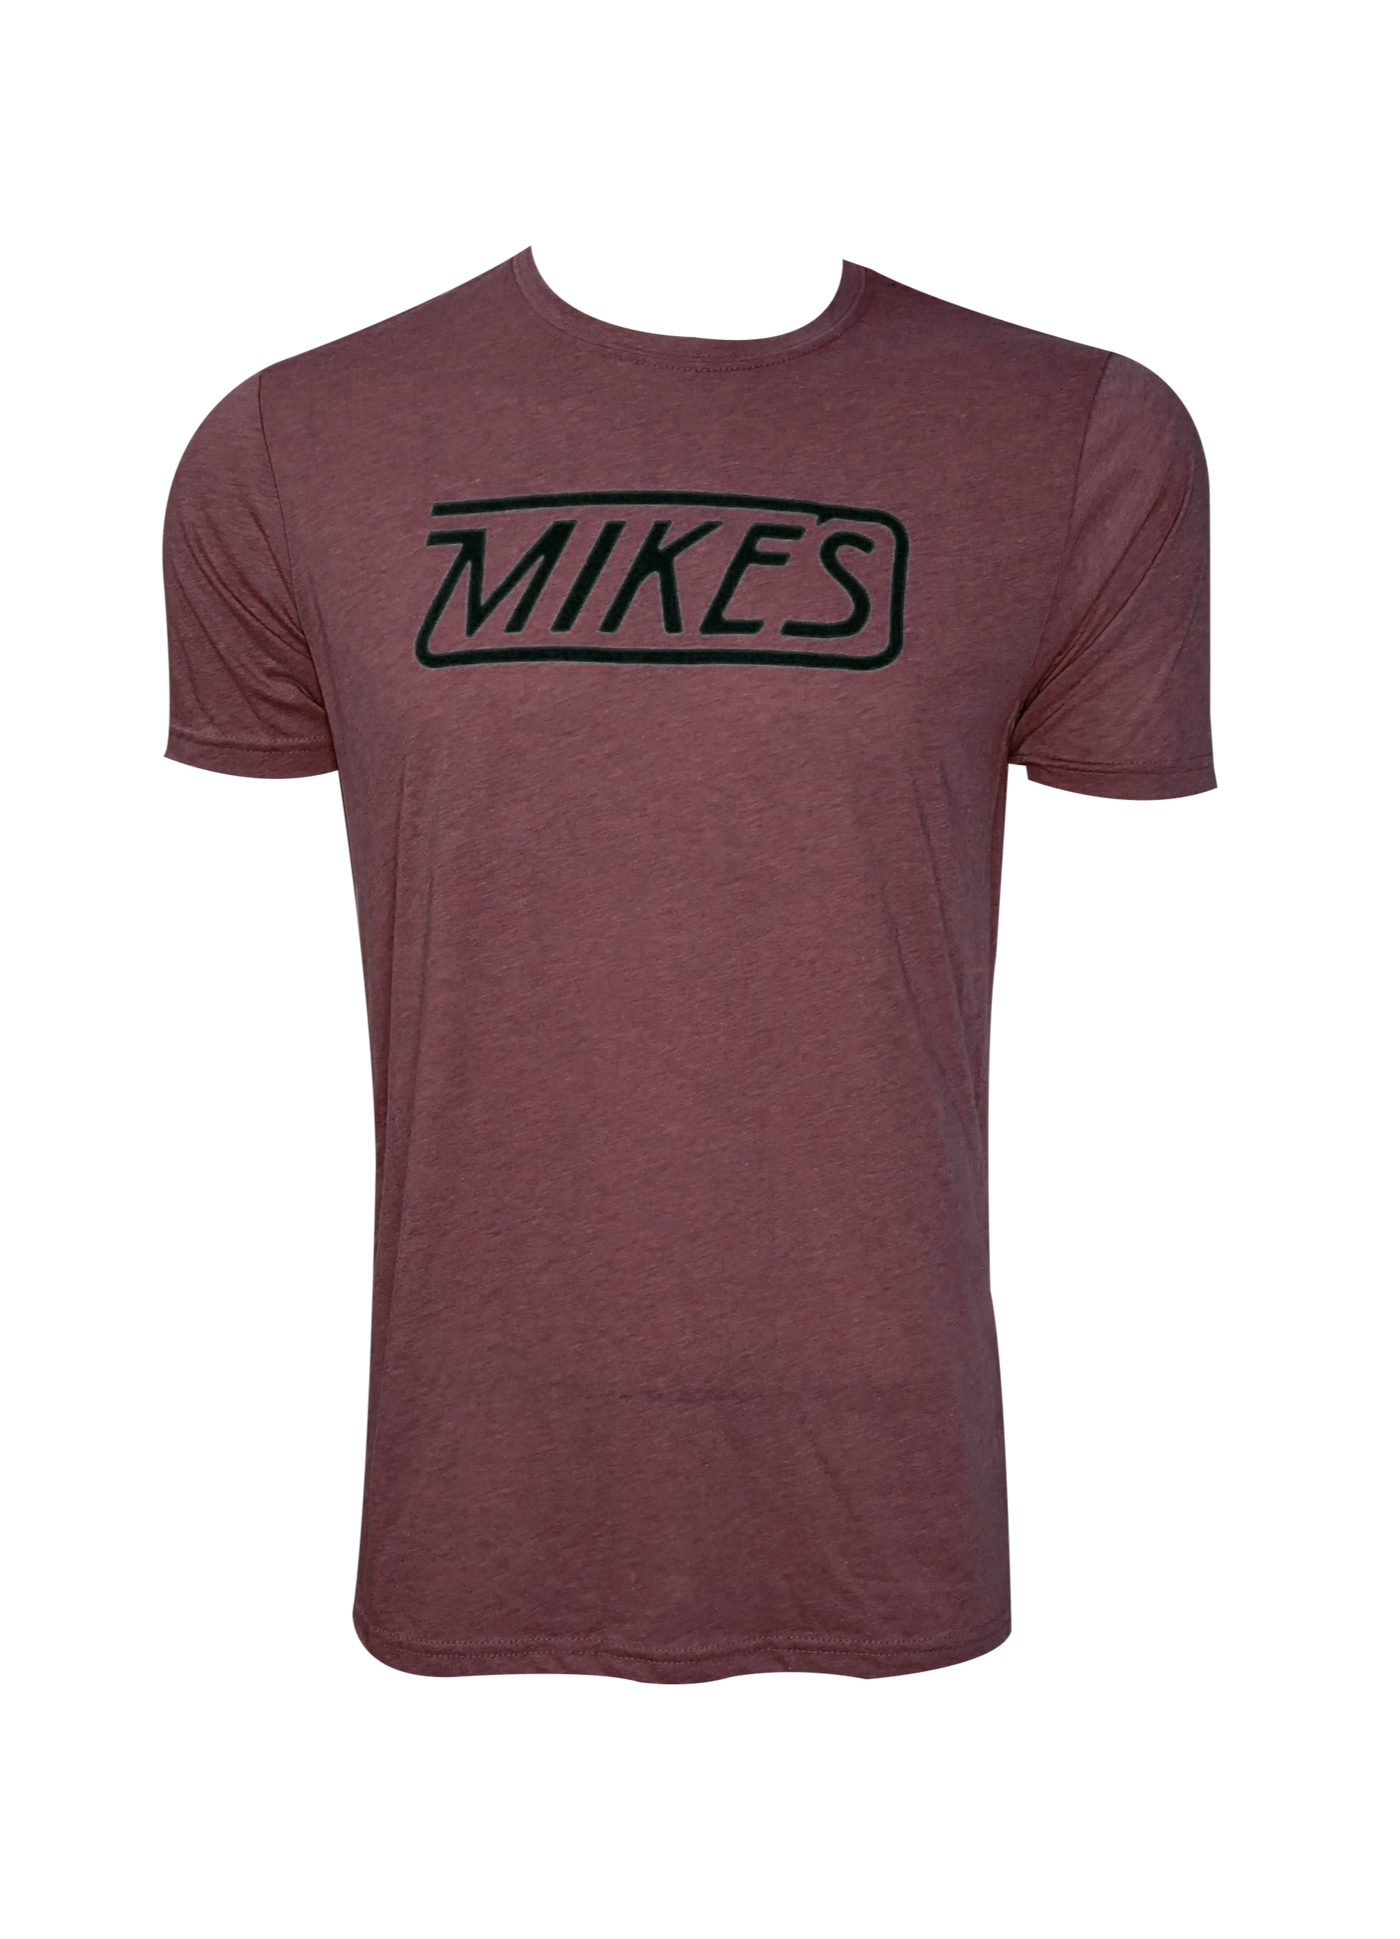 Mikes Bikes Retro T-Shirt